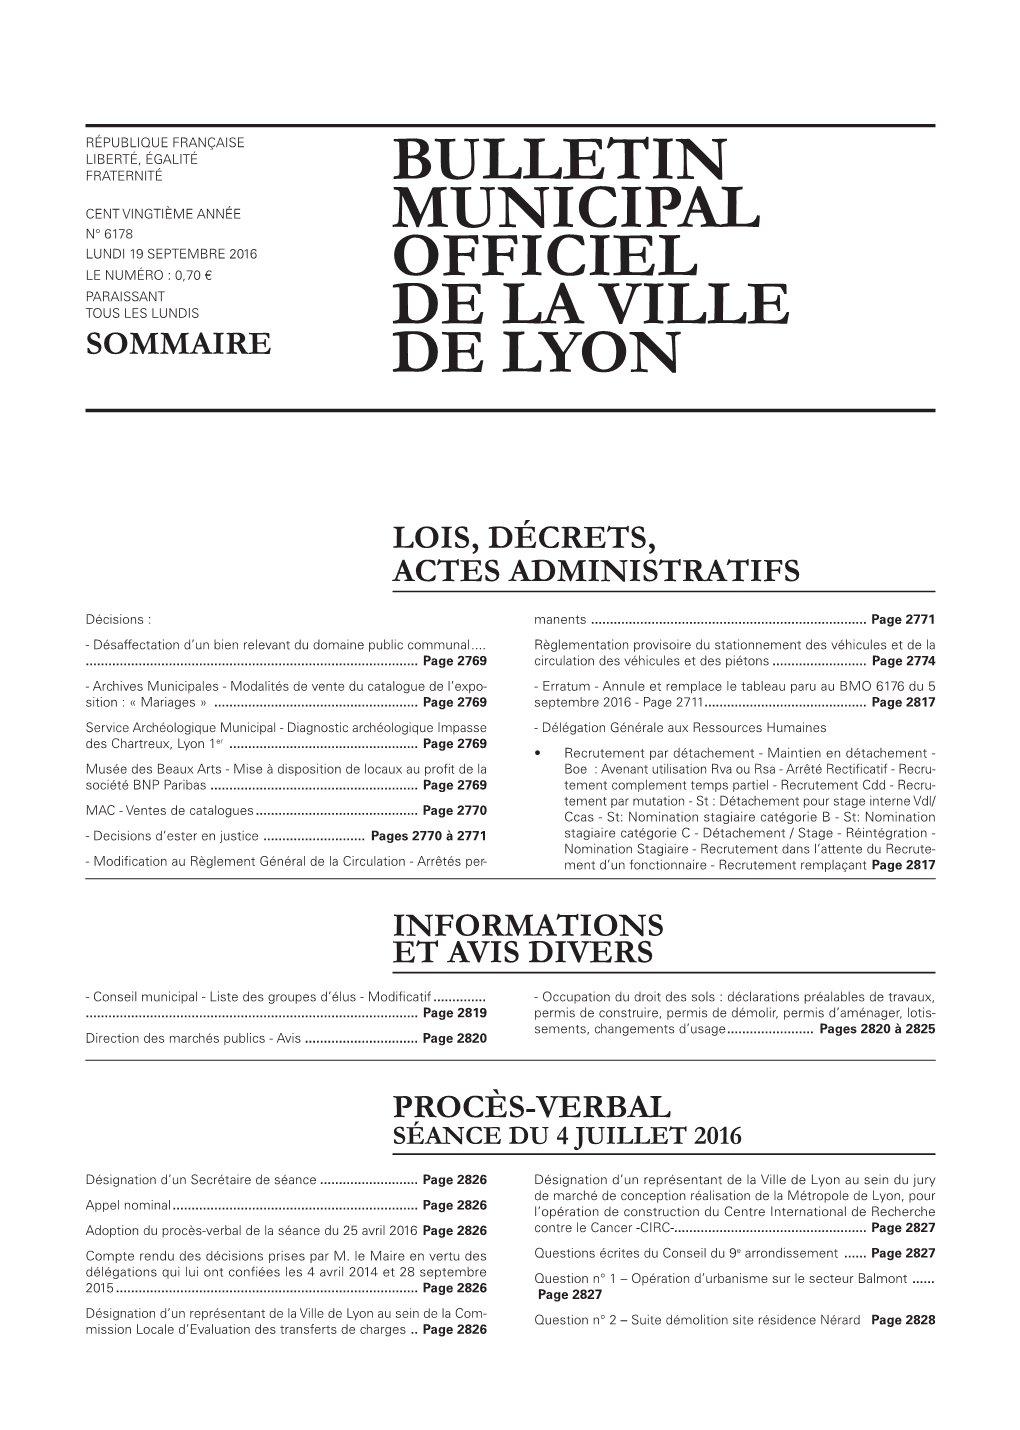 BULLETIN MUNICIPAL OFFICIEL DE LA VILLE DE LYON 19 Septembre 2016